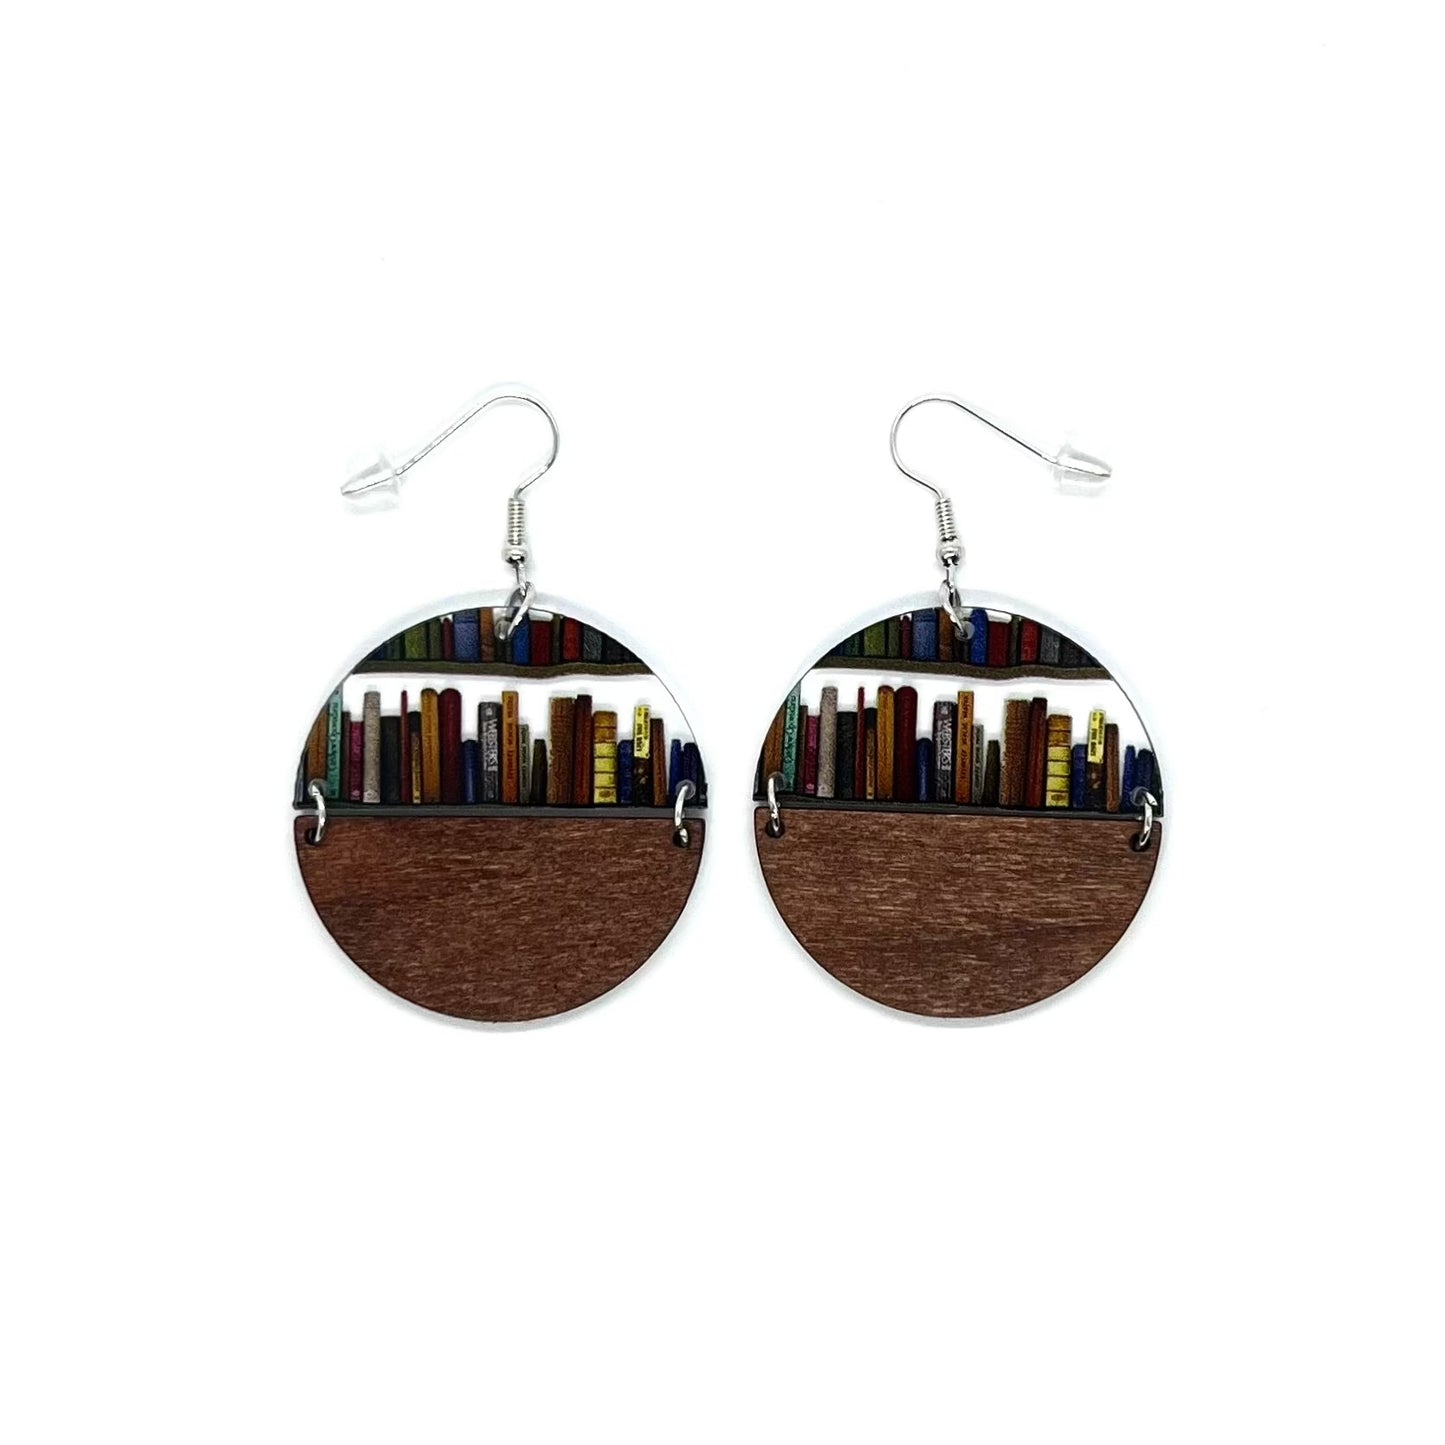 Acrylic Library Bookshelf Wood Drop Pendant Earrings